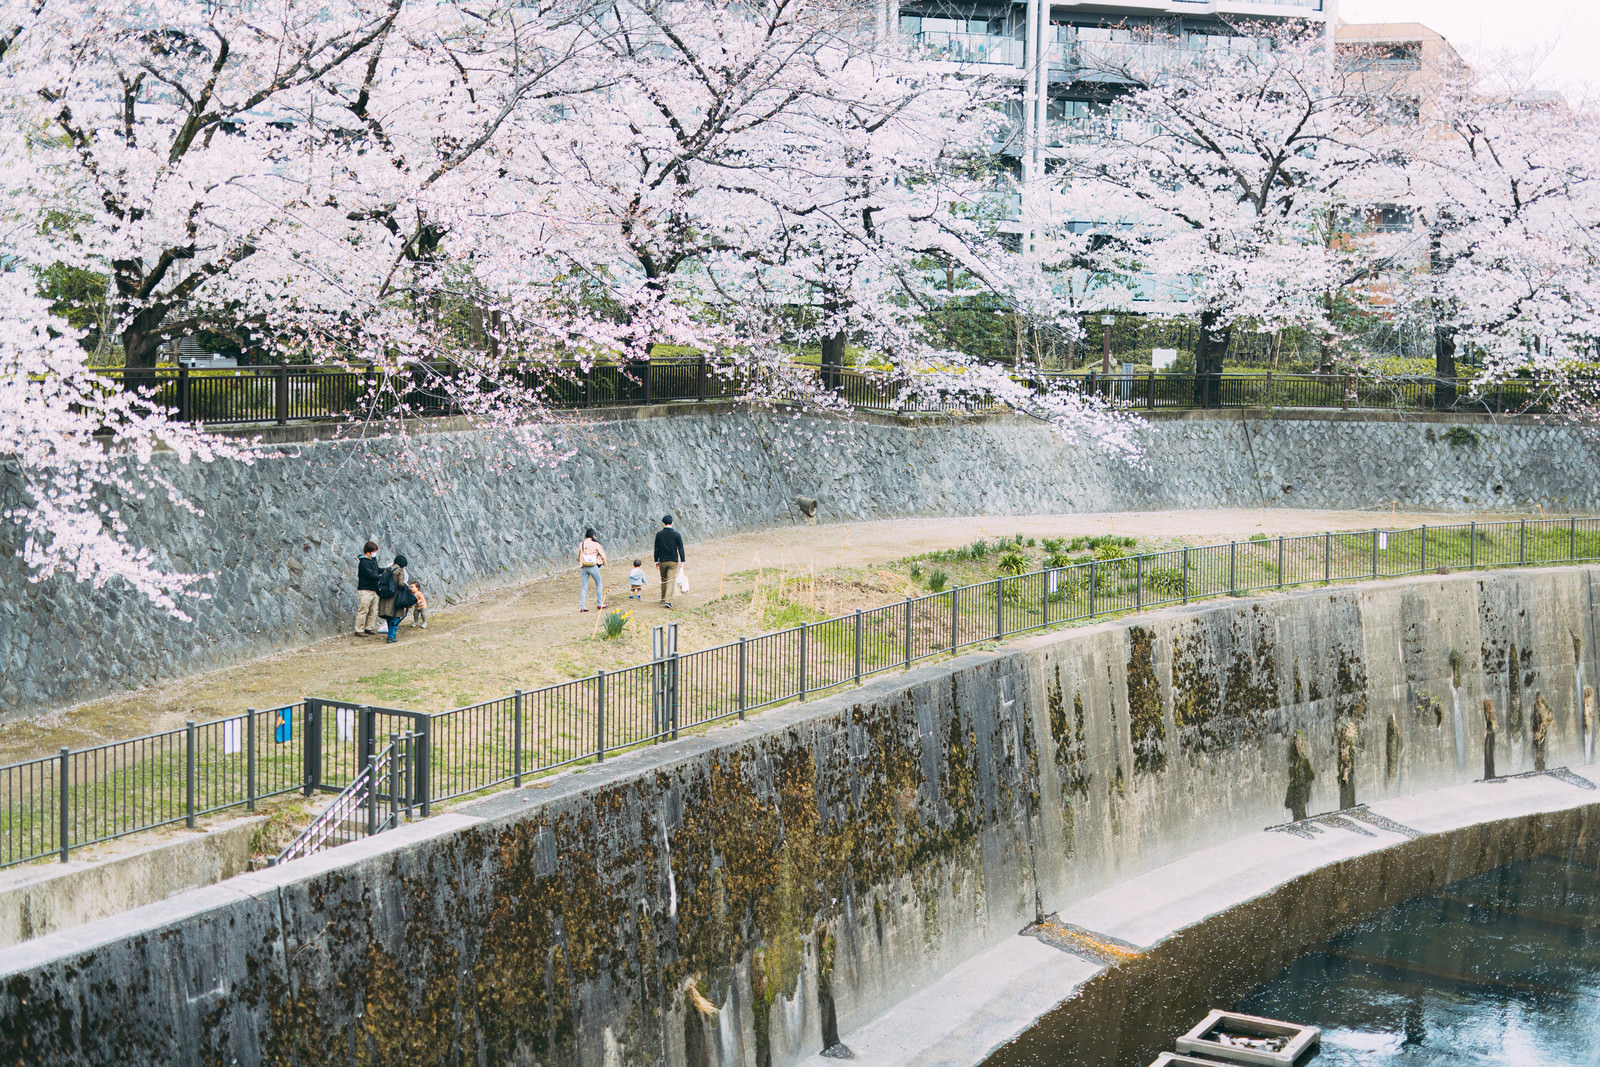 「桜が満開の板橋区立加賀橋公園と散歩する家族 | フリー素材のぱくたそ」の写真